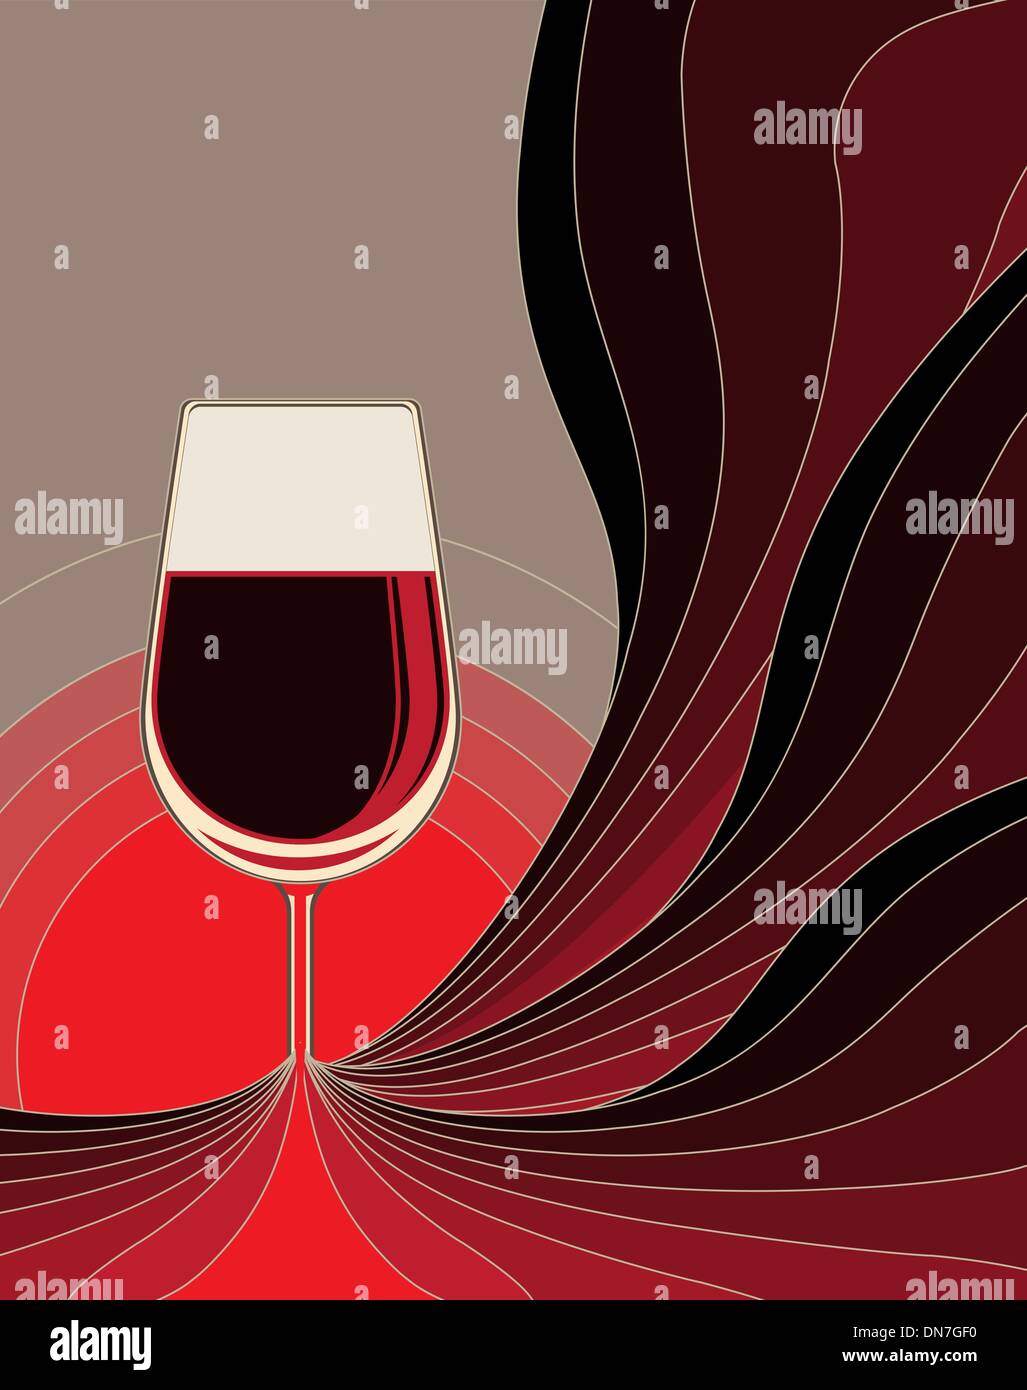 La naissance de vin rouge vin"┐ Au¢s naissance Illustration de Vecteur